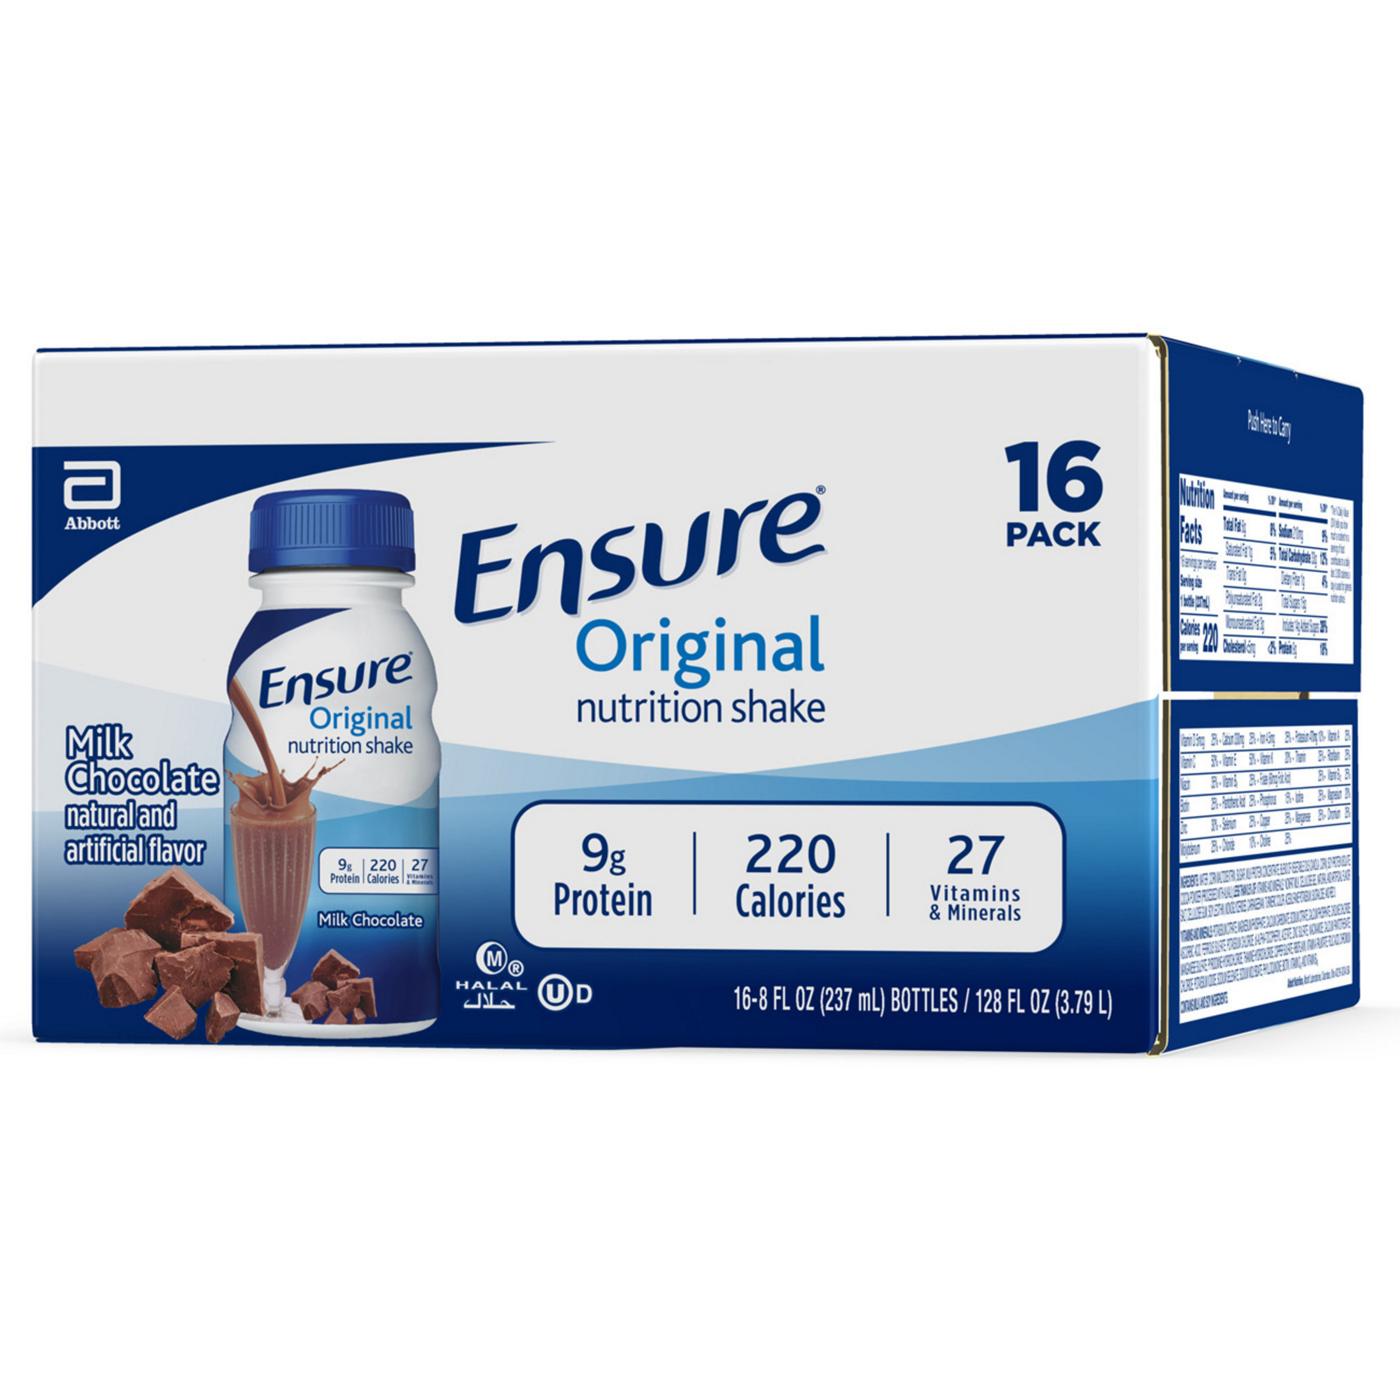 Ensure Original Nutrition Shake - Milk Chocolate; image 5 of 10